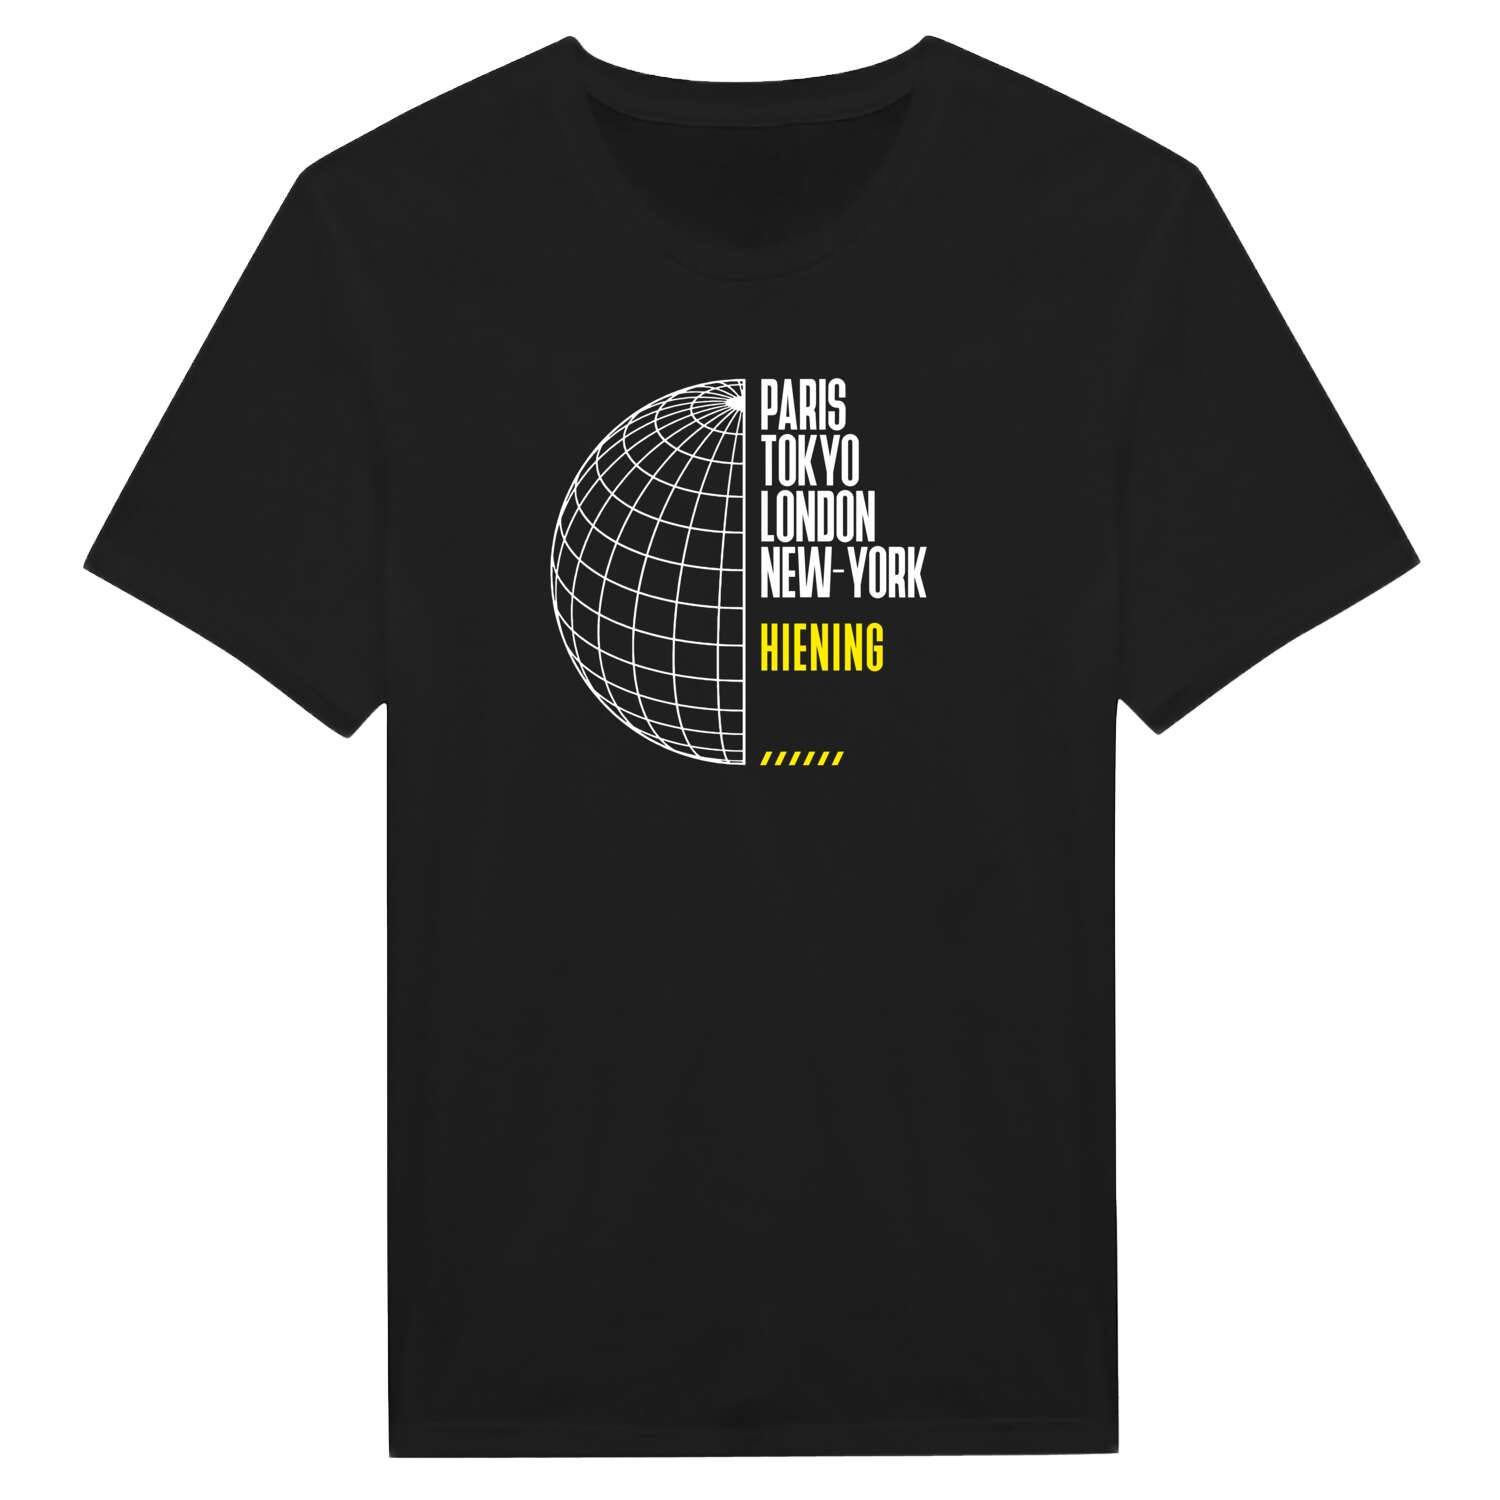 Hiening T-Shirt »Paris Tokyo London«